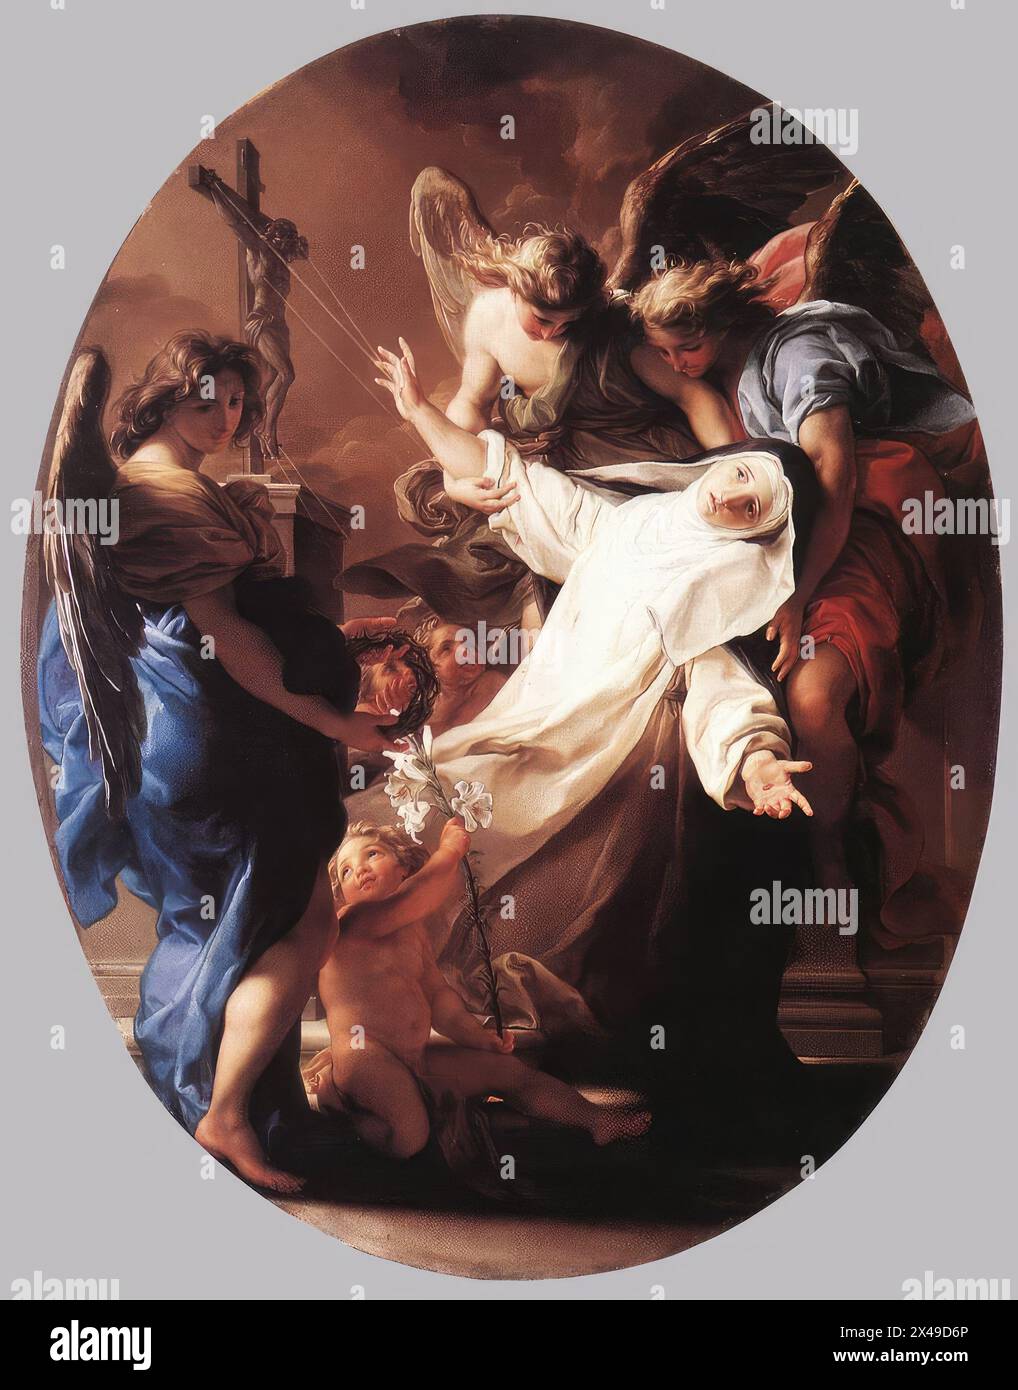 BATONI, Pompeo (* 1708, Lucca, d. 1787, Roma) die Ekstase der hl. Katharina von Siena 1743 Öl auf Leinwand Museo di Villa Guinigi, Lucca Pompeo Batoni war ein sehr kultivierter Mann, der schon früh internationale Berühmtheit erlangte. Er war der erste italienische Künstler, der bewusst eine formale Alternative zur Rokoko-Kunst und zur venezianischen Malerei erarbeitete, die er als überholt empfand. Er studierte in Rom Raffael und klassische Renaissance-Kunst. Er entwickelte schnell ein „Reformprogramm“ für das Malen entlang kontrollierter akademischer Linien. Er wollte eine Reihe von Gemälden bereitstellen, die als ein Bild verwendet werden könnten Stockfoto